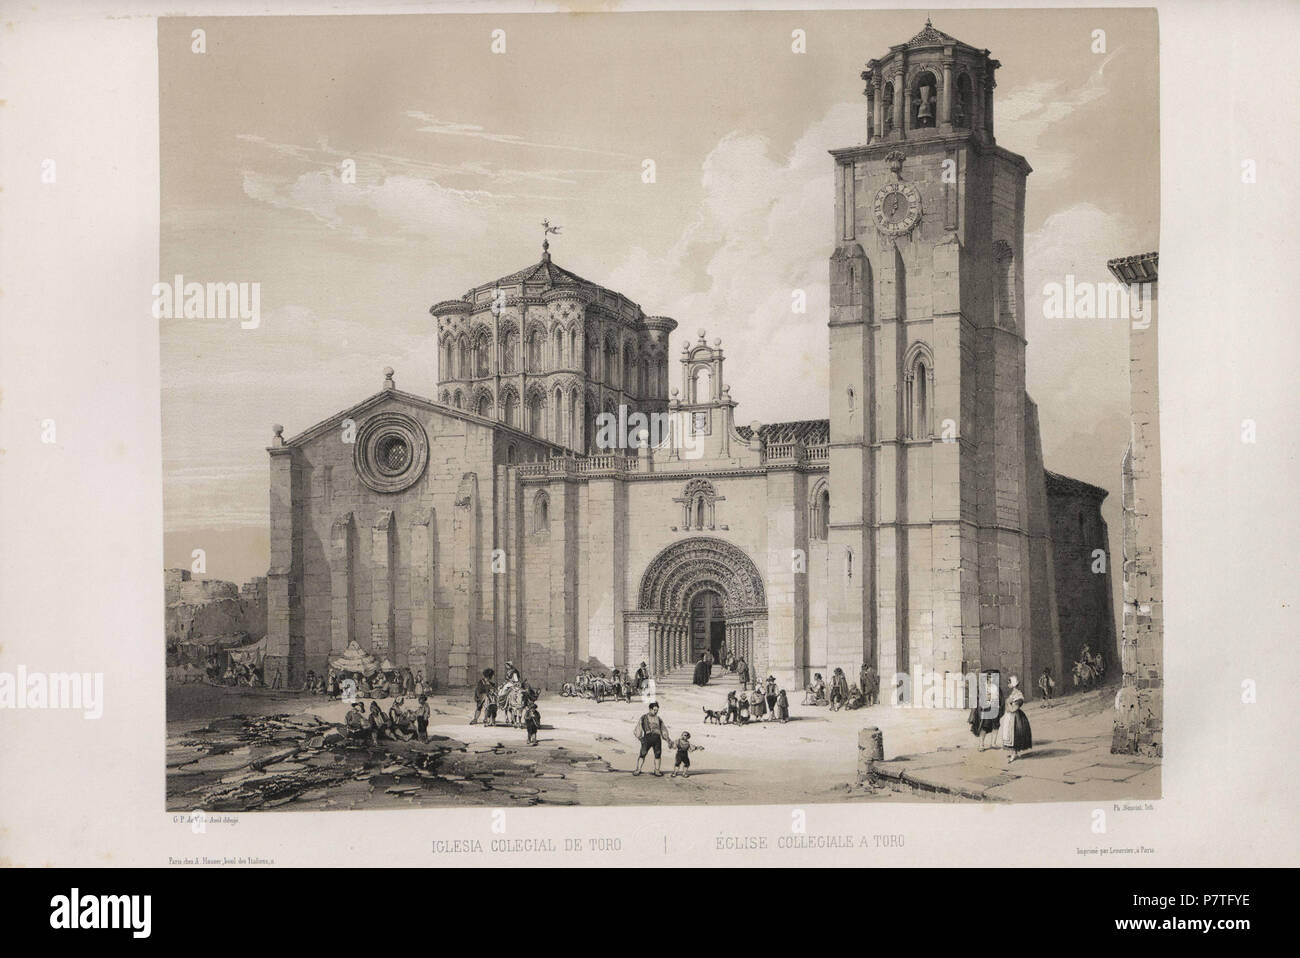 3 1844, España artística y monumental, vistas y descripción de los sitios y monumentos más notables de españa, vol 2, Iglesia colegial de Toro Stock Photo